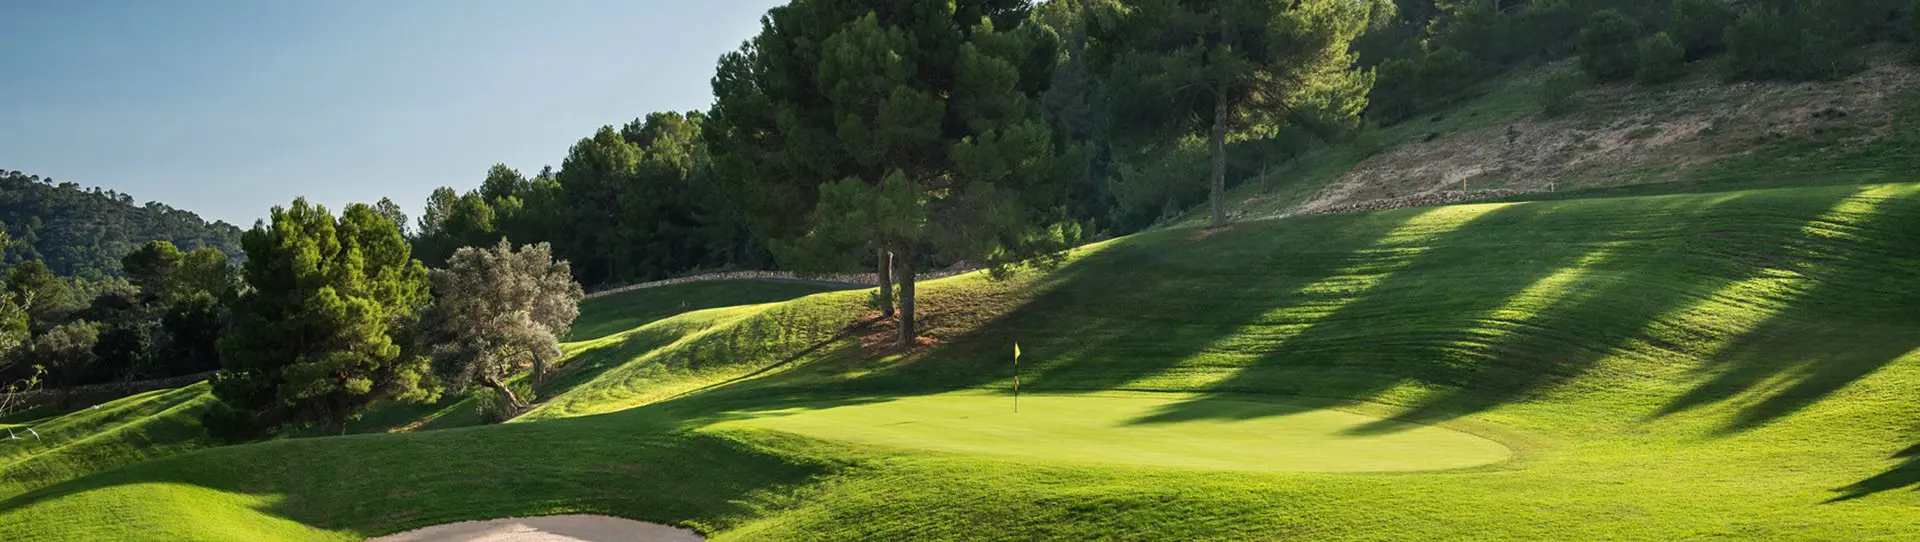 Spain golf holidays - Andratx Duo Experience - Photo 2